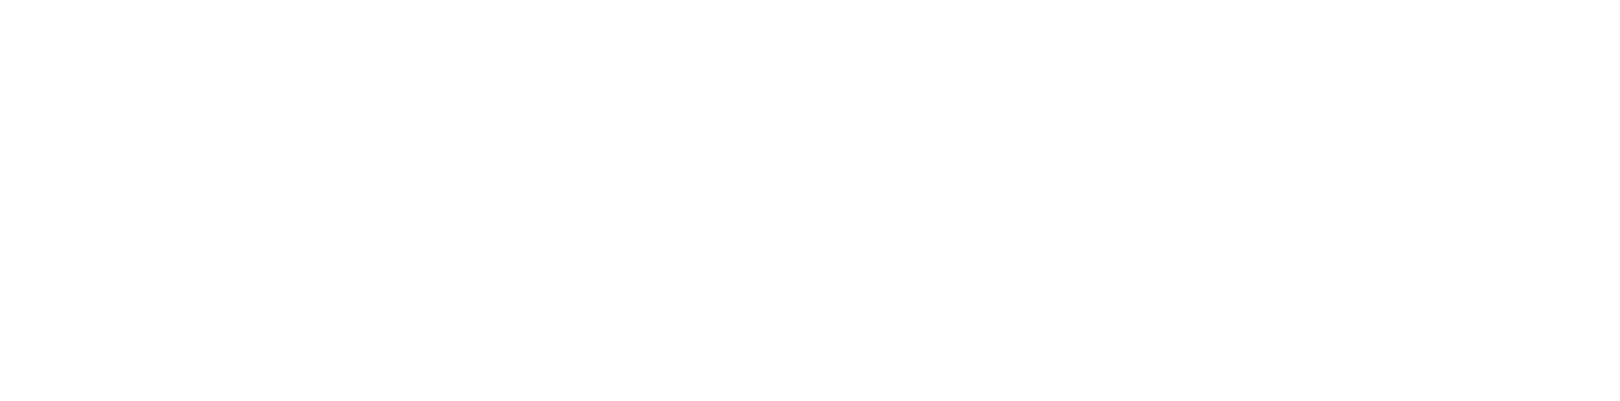 Sonder Holdings logo large for dark backgrounds (transparent PNG)